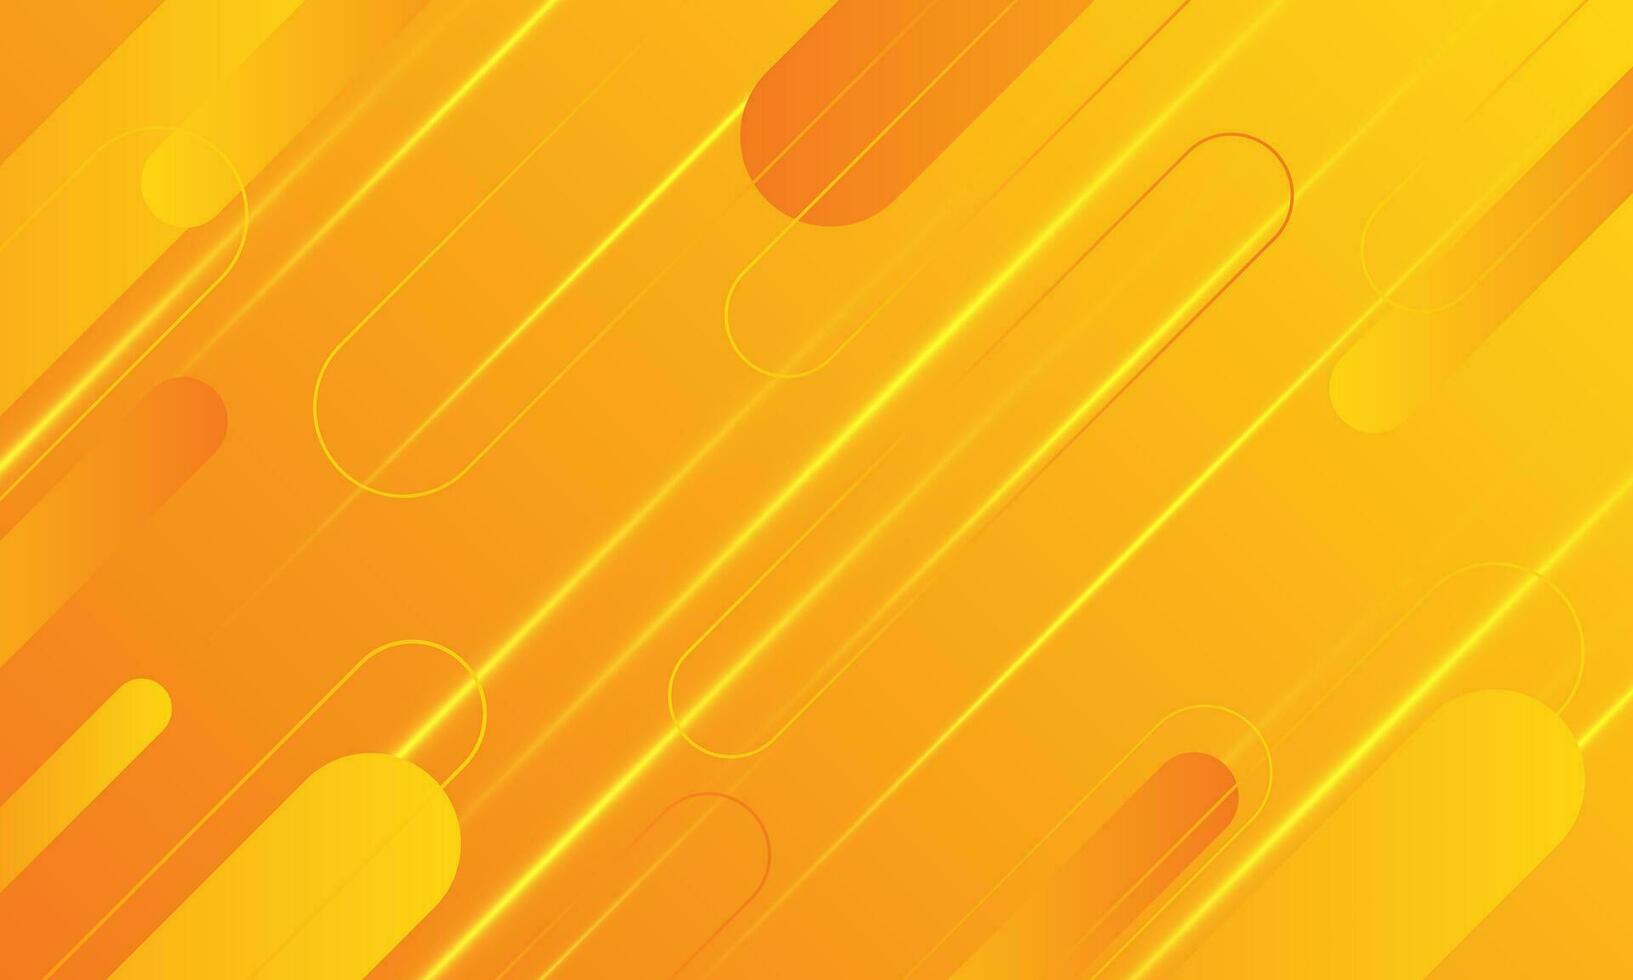 abstrakt hastighet ljus orange geometrisk bakgrund. dynamisk former sammansättning teknologi hitech kommunikation begrepp innovation vektor design